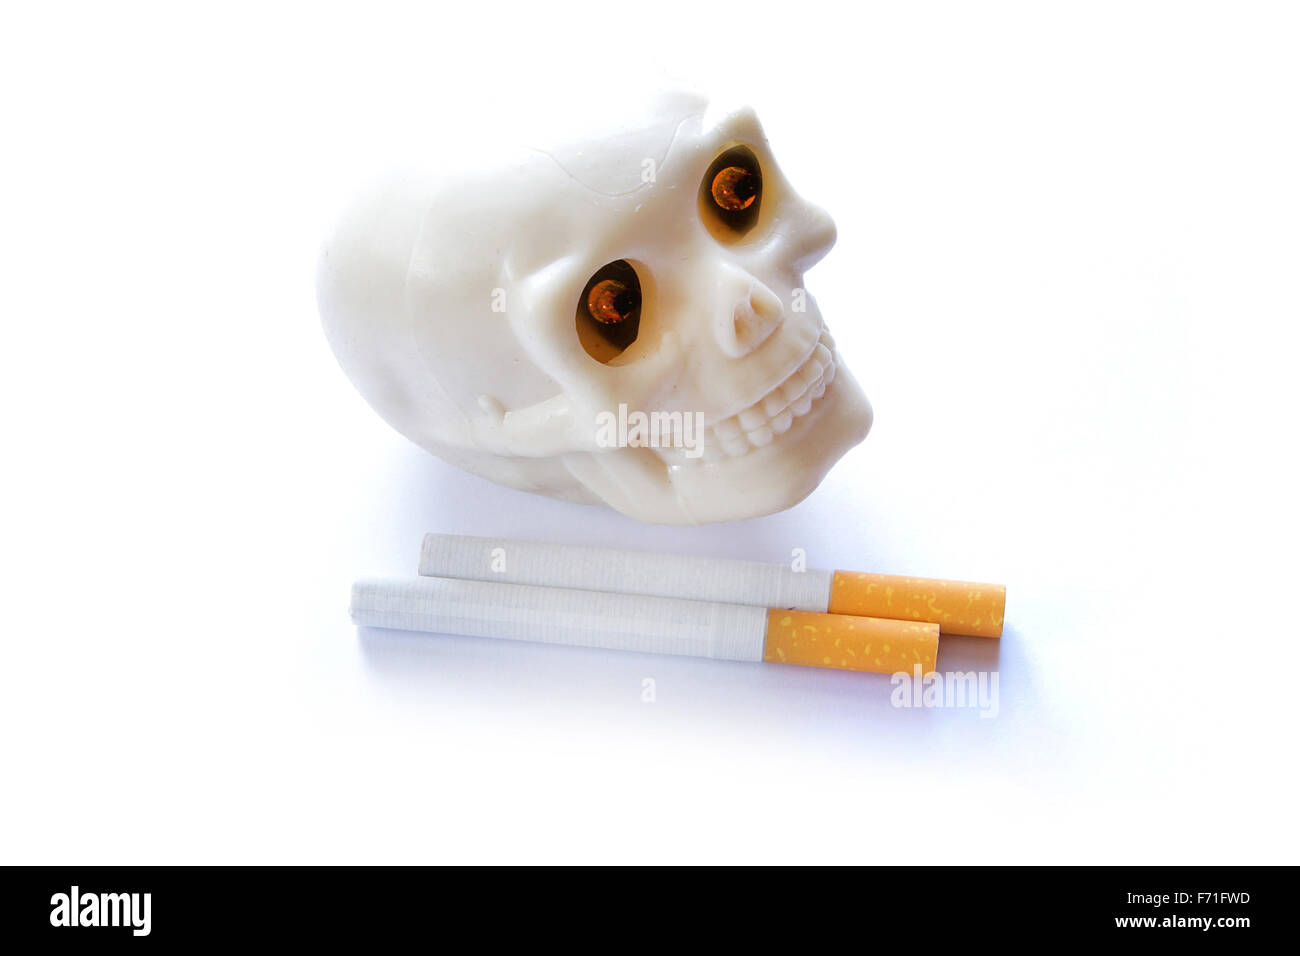 Il fumo uccide vintage teschio umano con ardente illumina gli occhi e sigarette su sfondo bianco Foto Stock